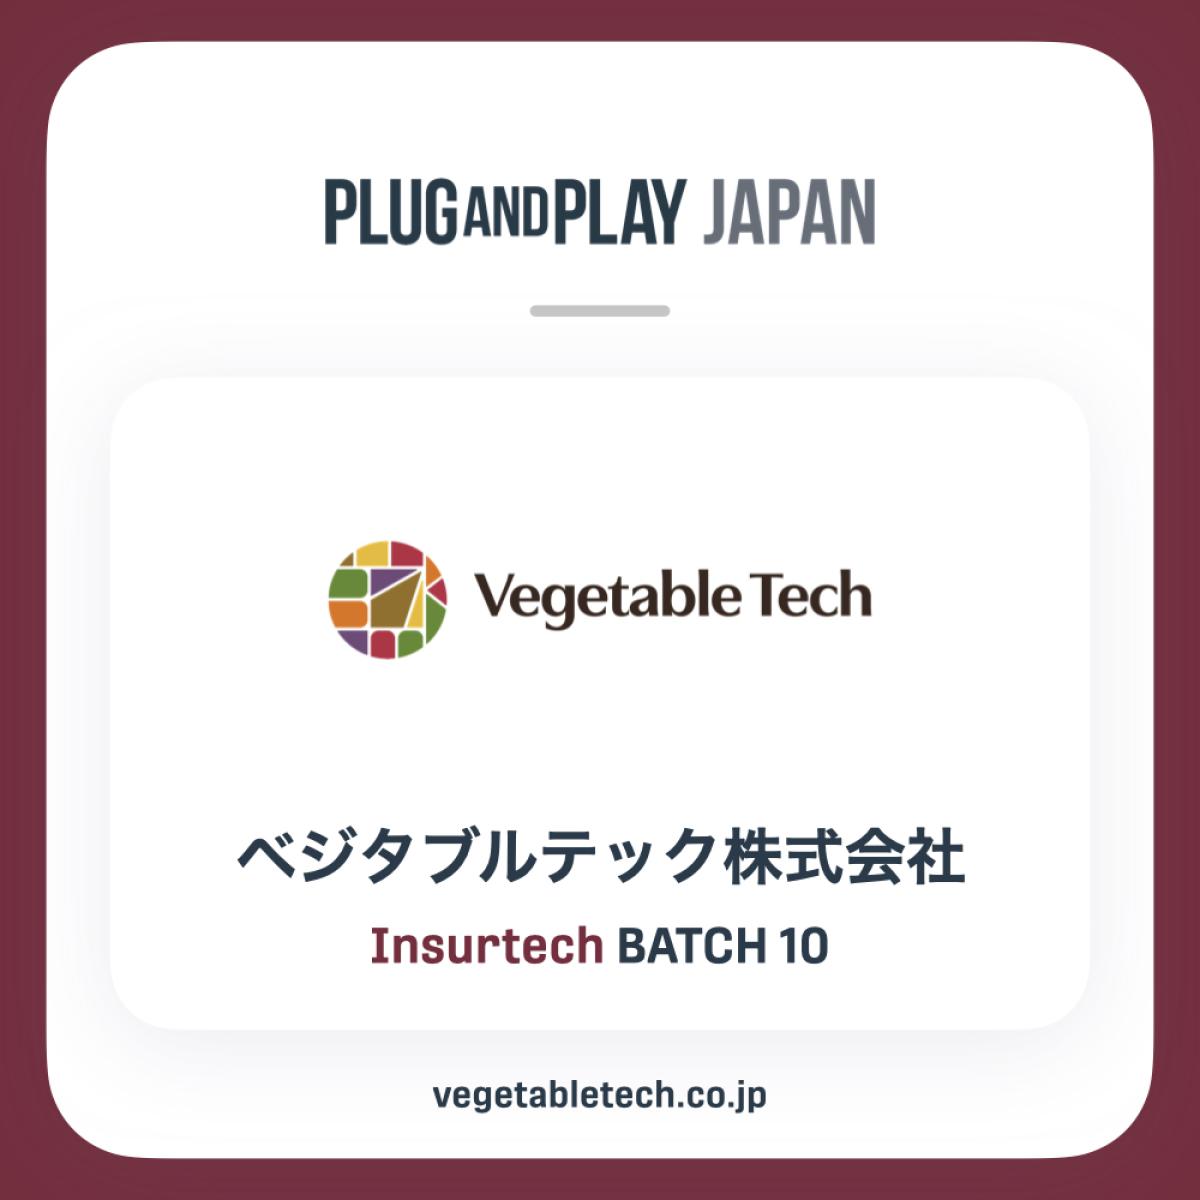 ベジタブルテック株式会社がPlug and Play Japan、アクセラレーションプログラム Winter/Spring 2023 Batchに採択されました。